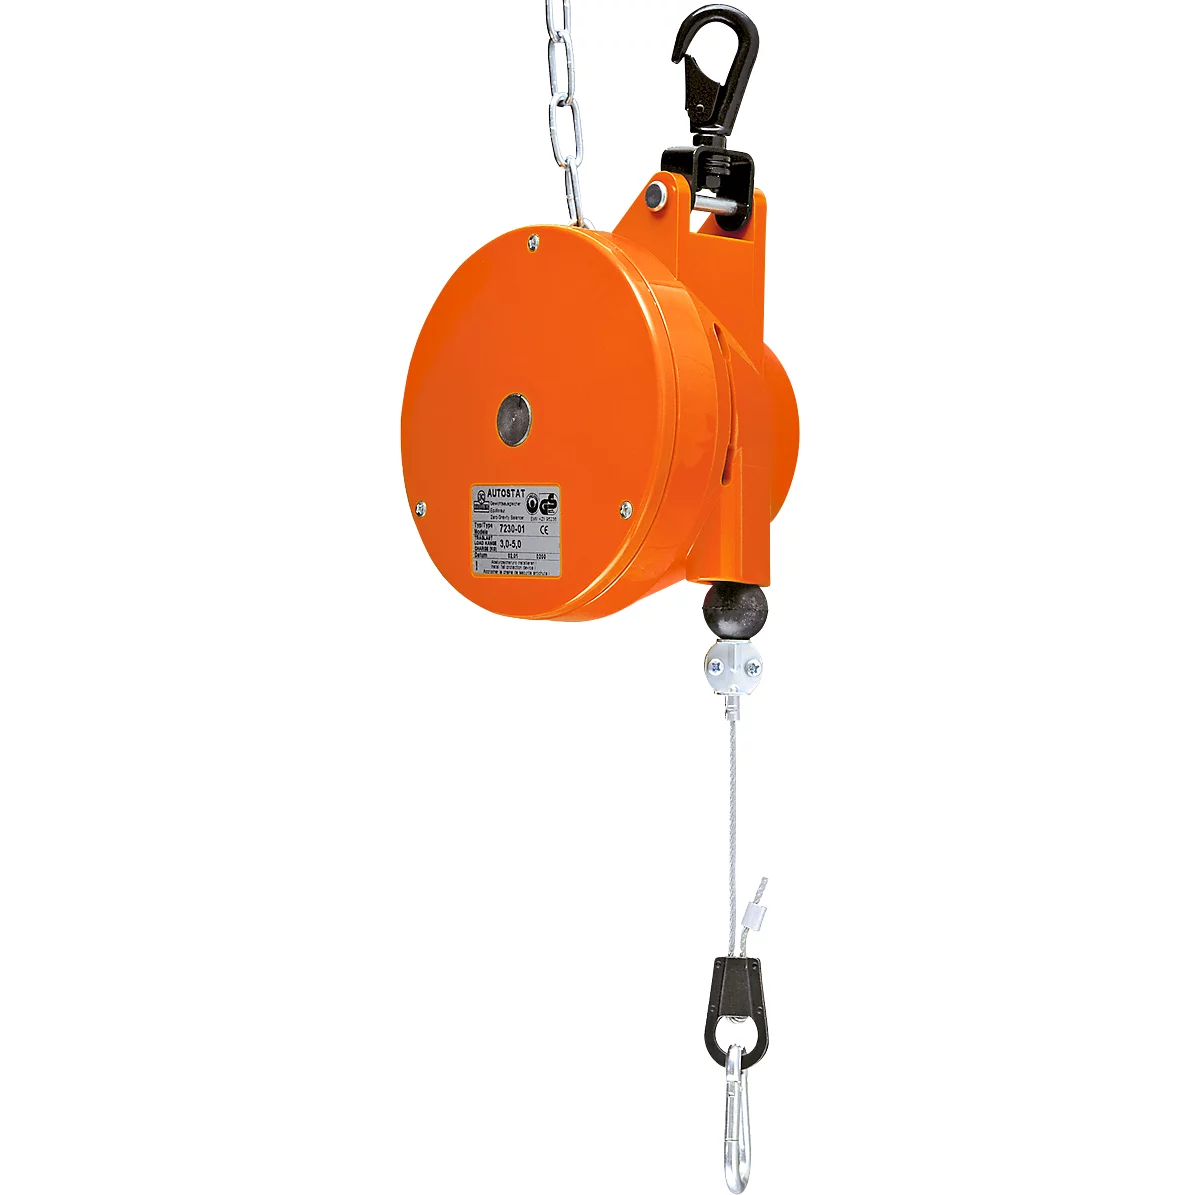 Autostato HAHN+KOLB tipo 7230 con resorte, con equilibrador, carga de 9,0 a 14,0 kg, longitud de extensión del cable hasta 2000 mm, plástico especial, naranja